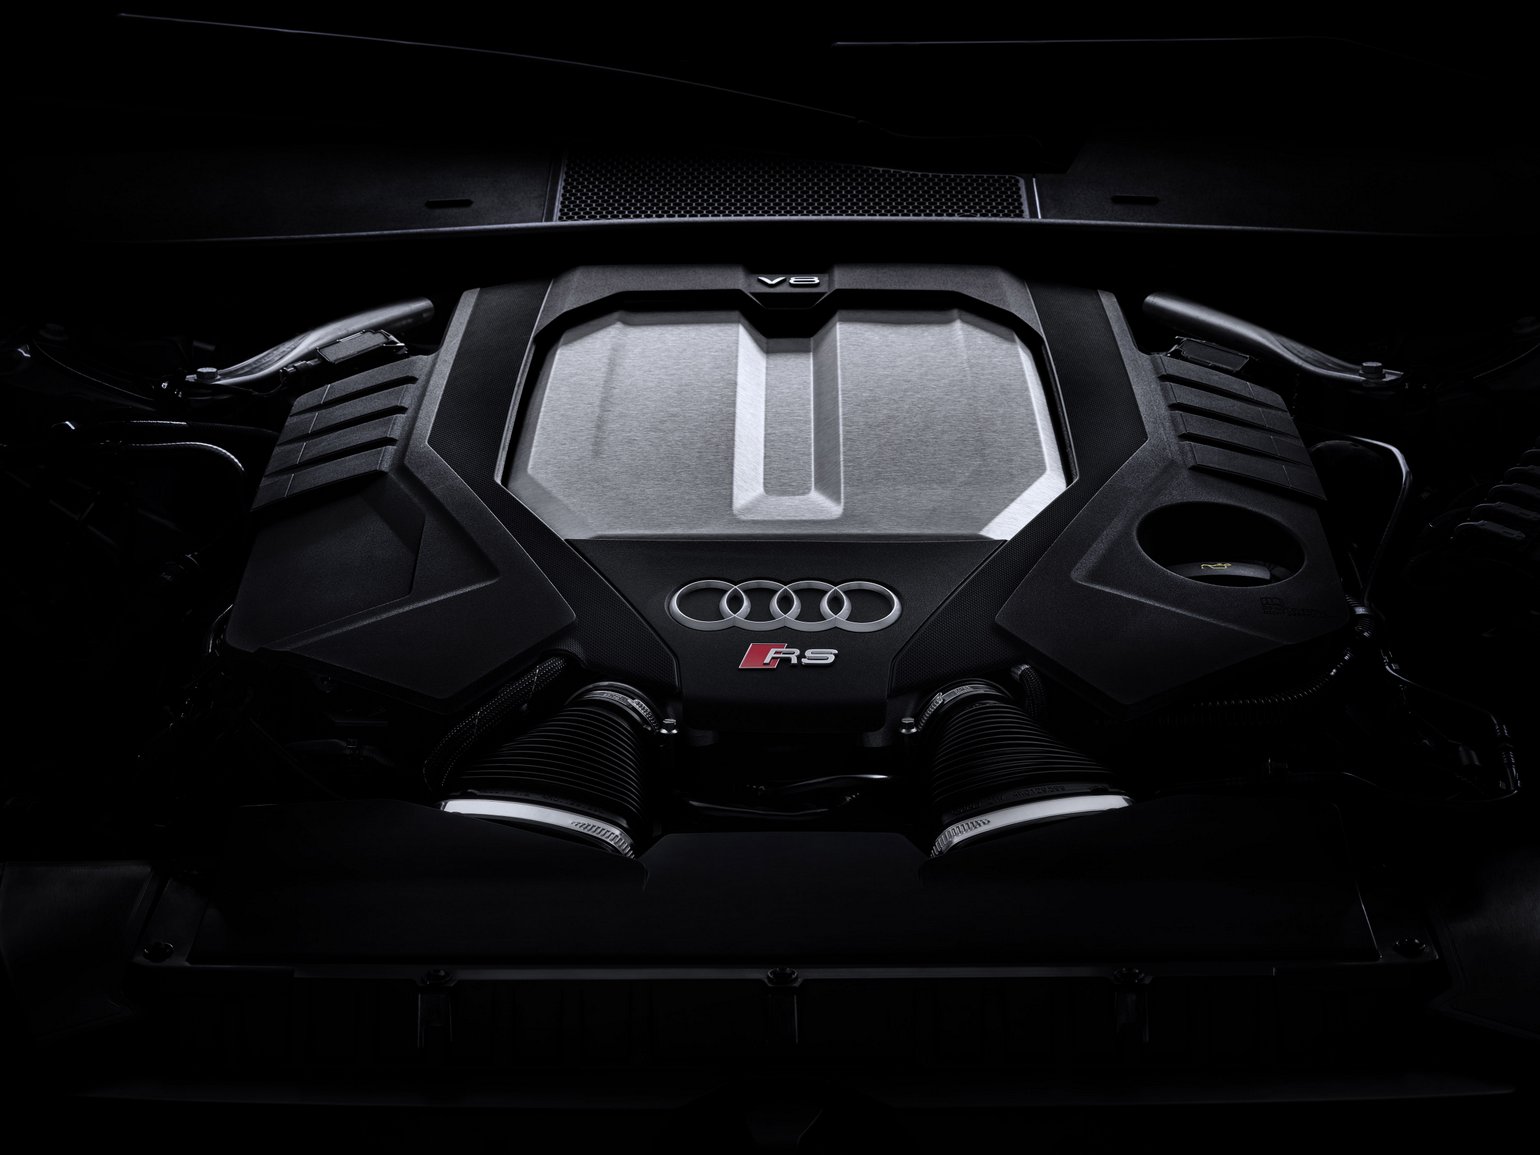 Hibridként tér vissza az Audi dúvad kombija 10